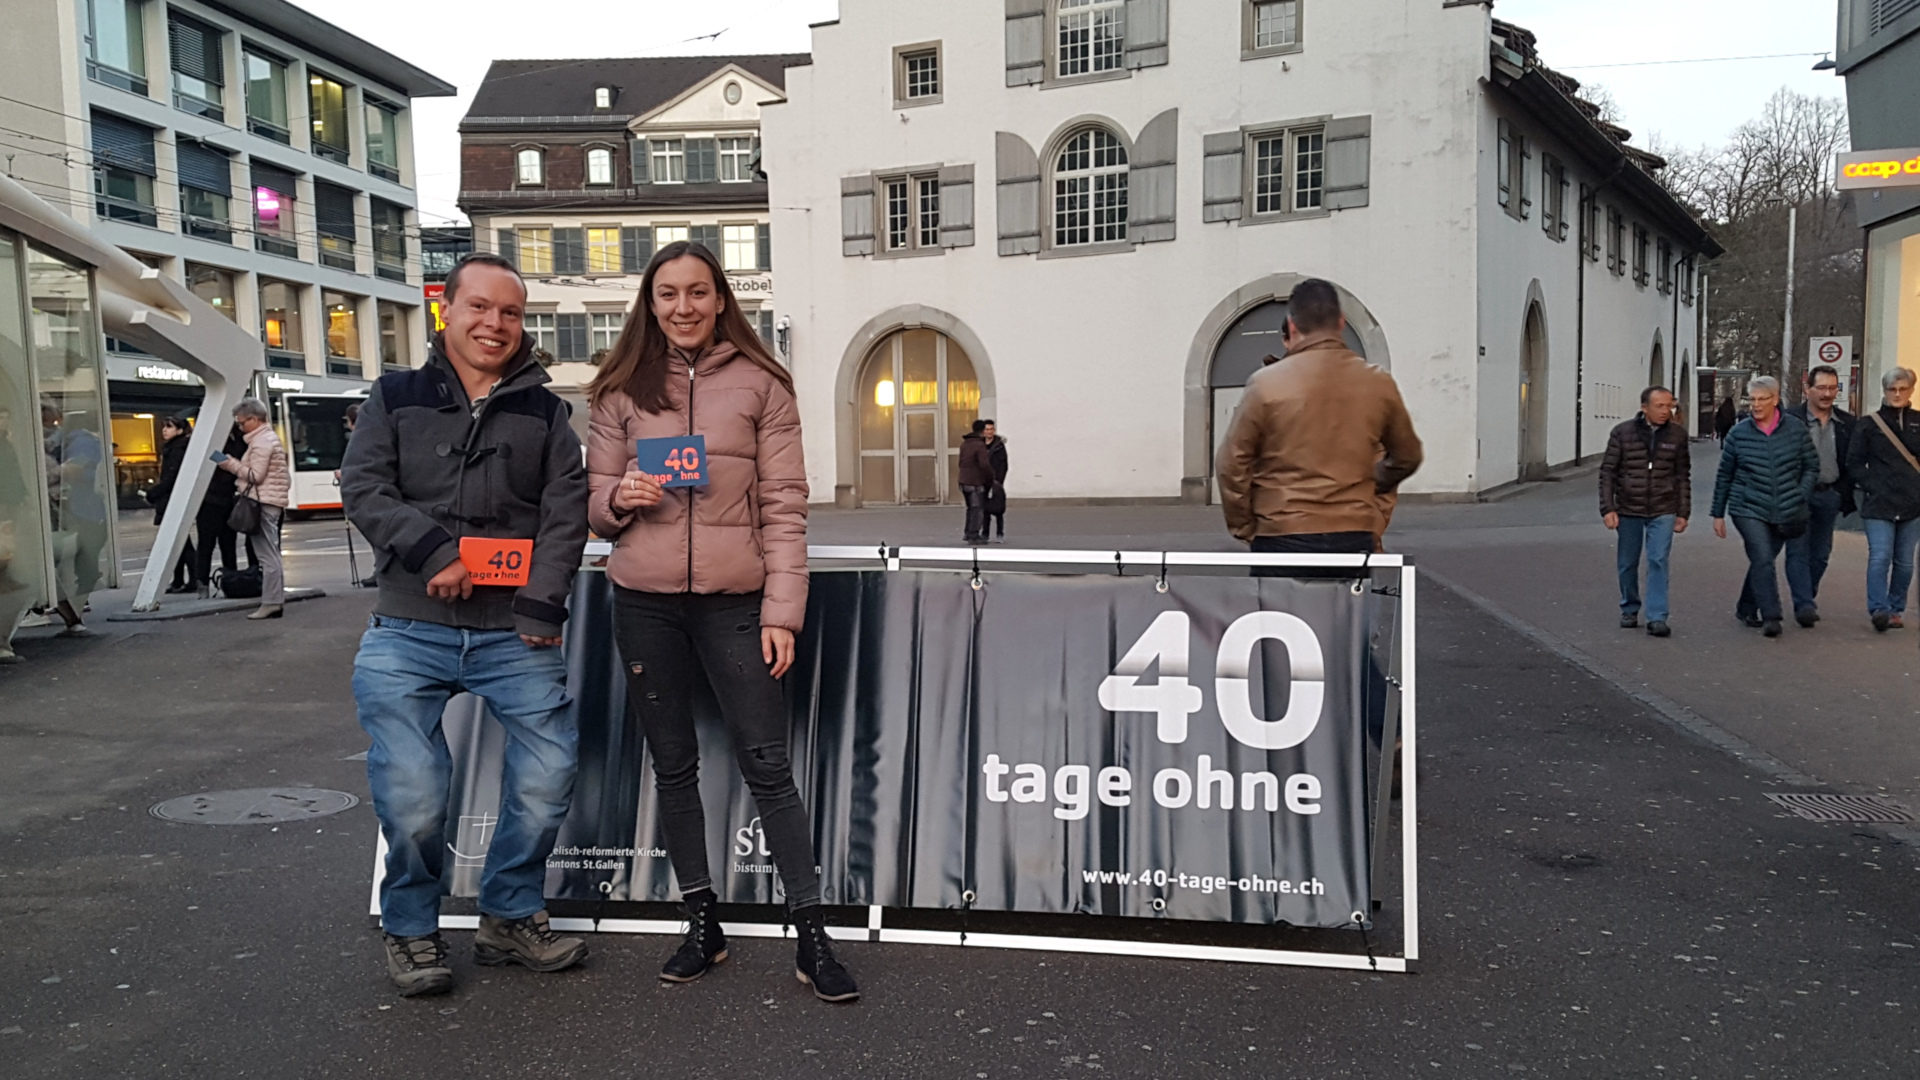 Freiwillige verteilen Flyer zur ökumenischen Aktion "40 Tage ohne"